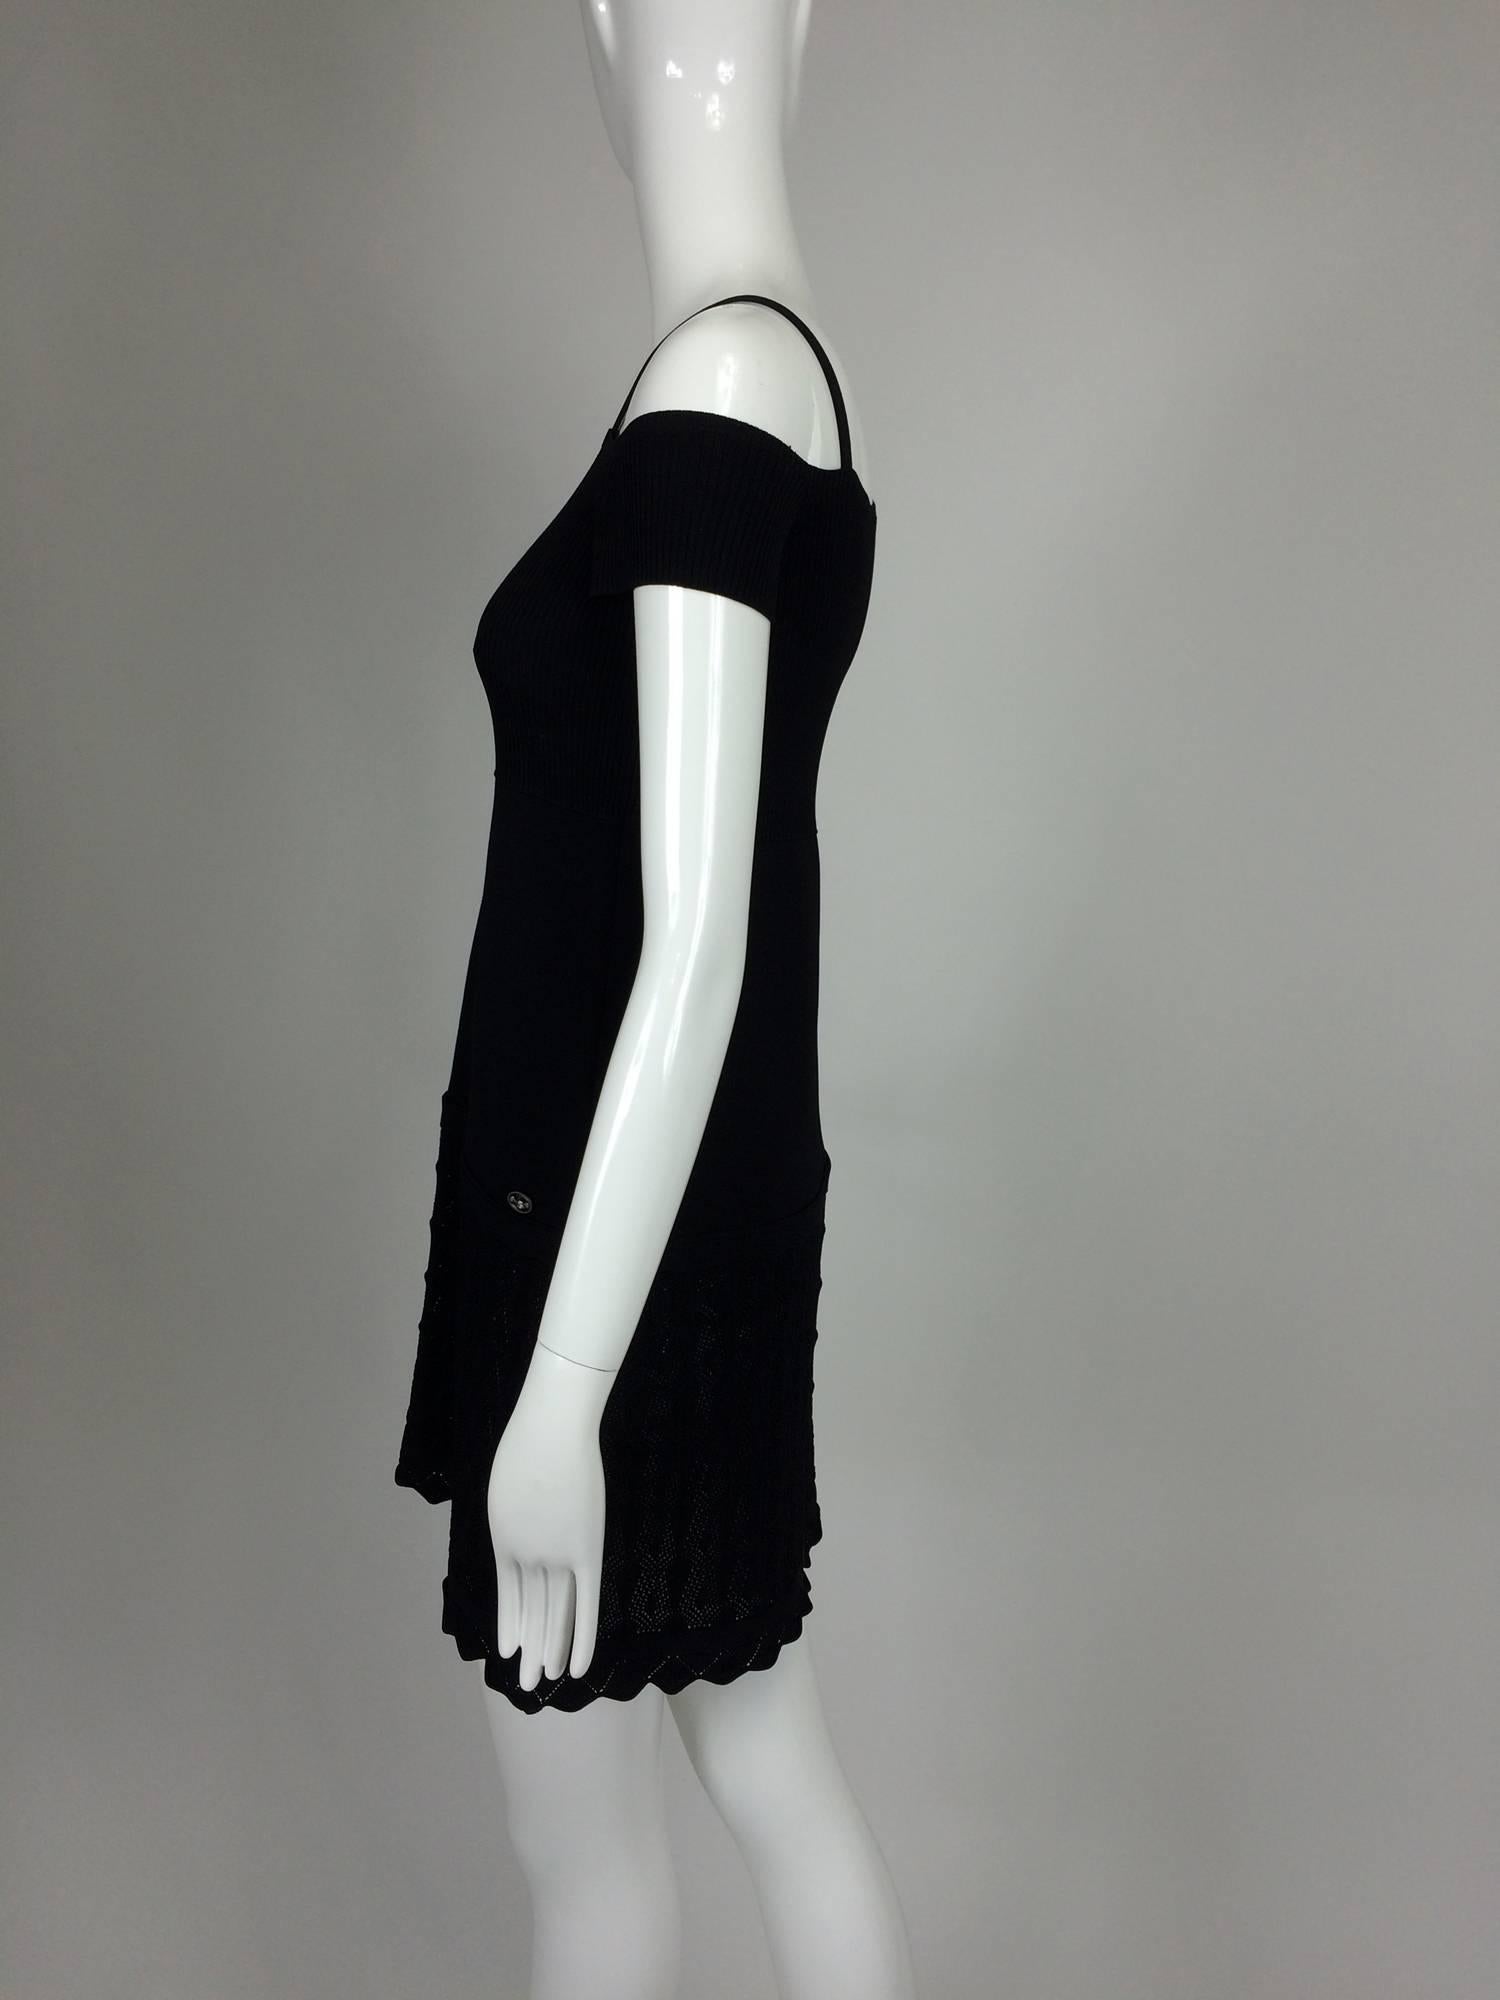 Chanel shoulder baring little black knit dress 2008 unworn 1